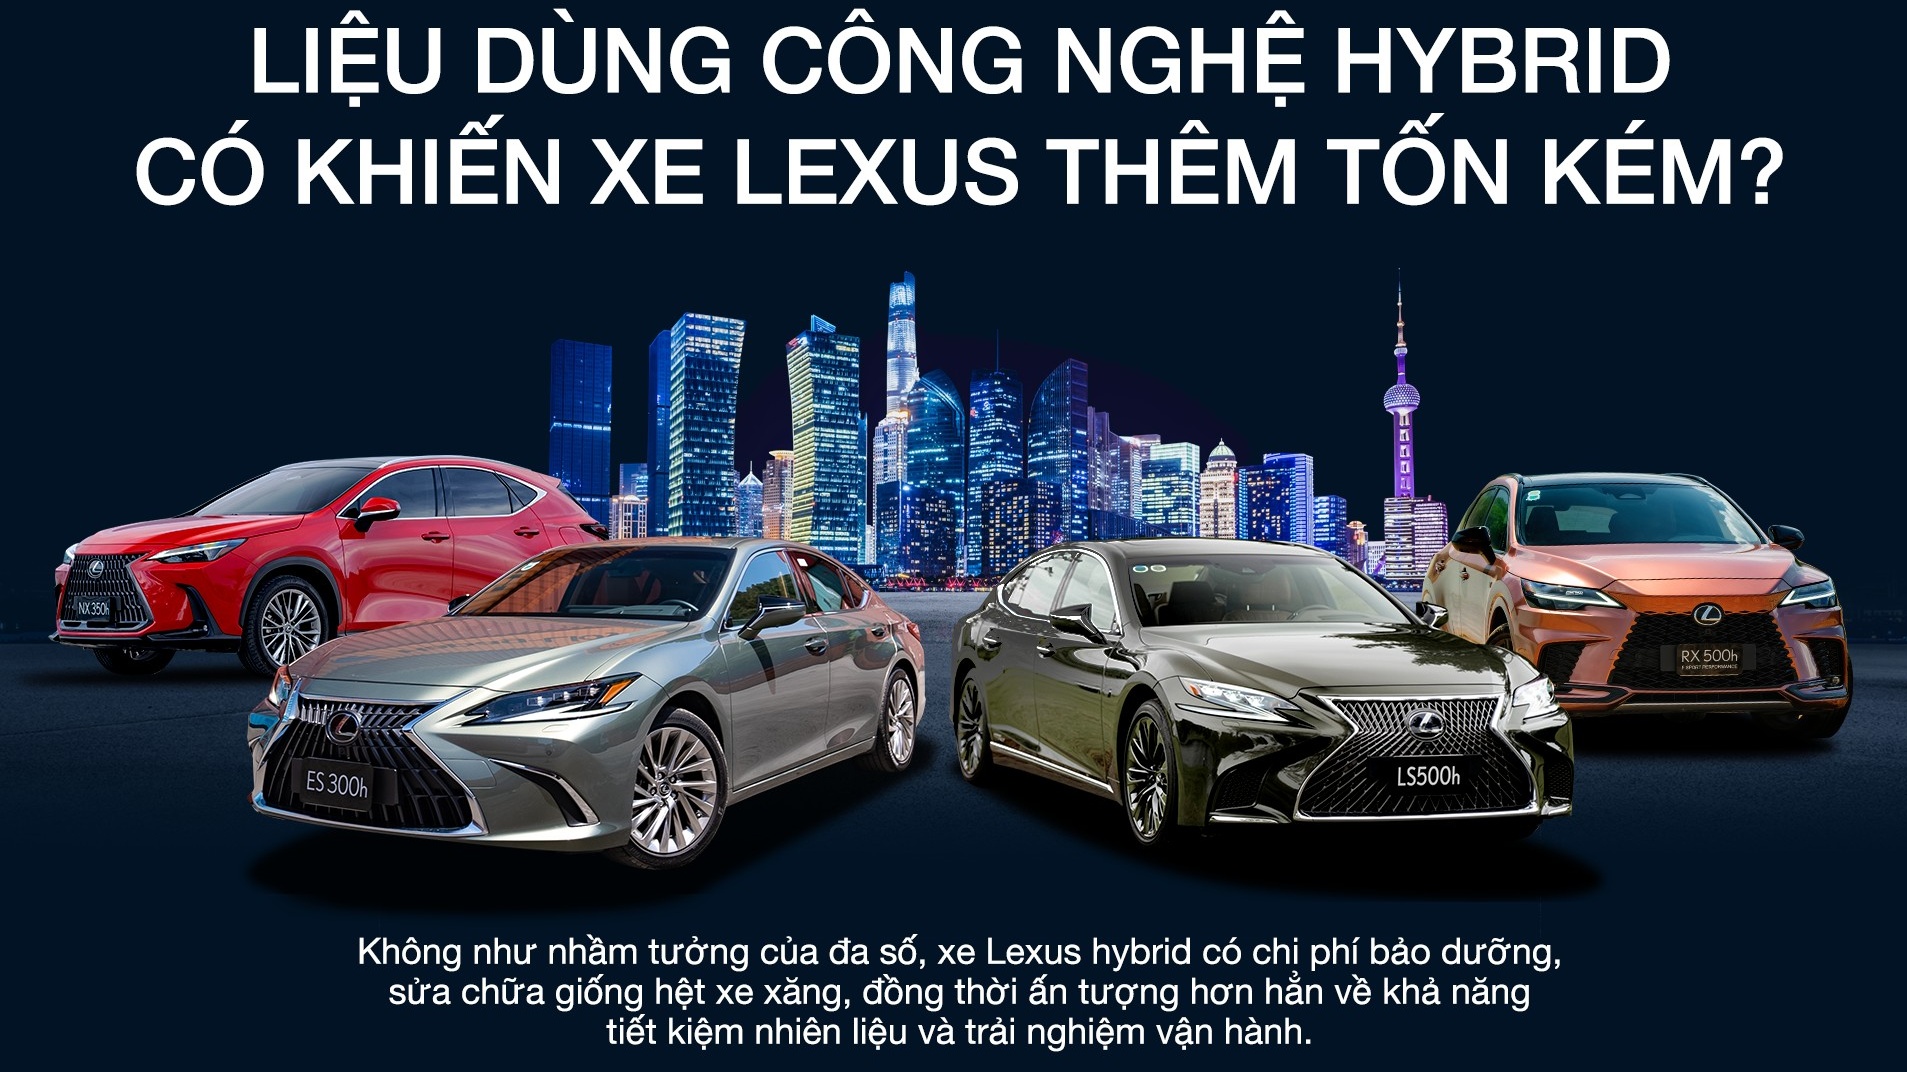 Liệu dùng công nghệ Hybrid có khiến xe Lexus thêm tốn kém?